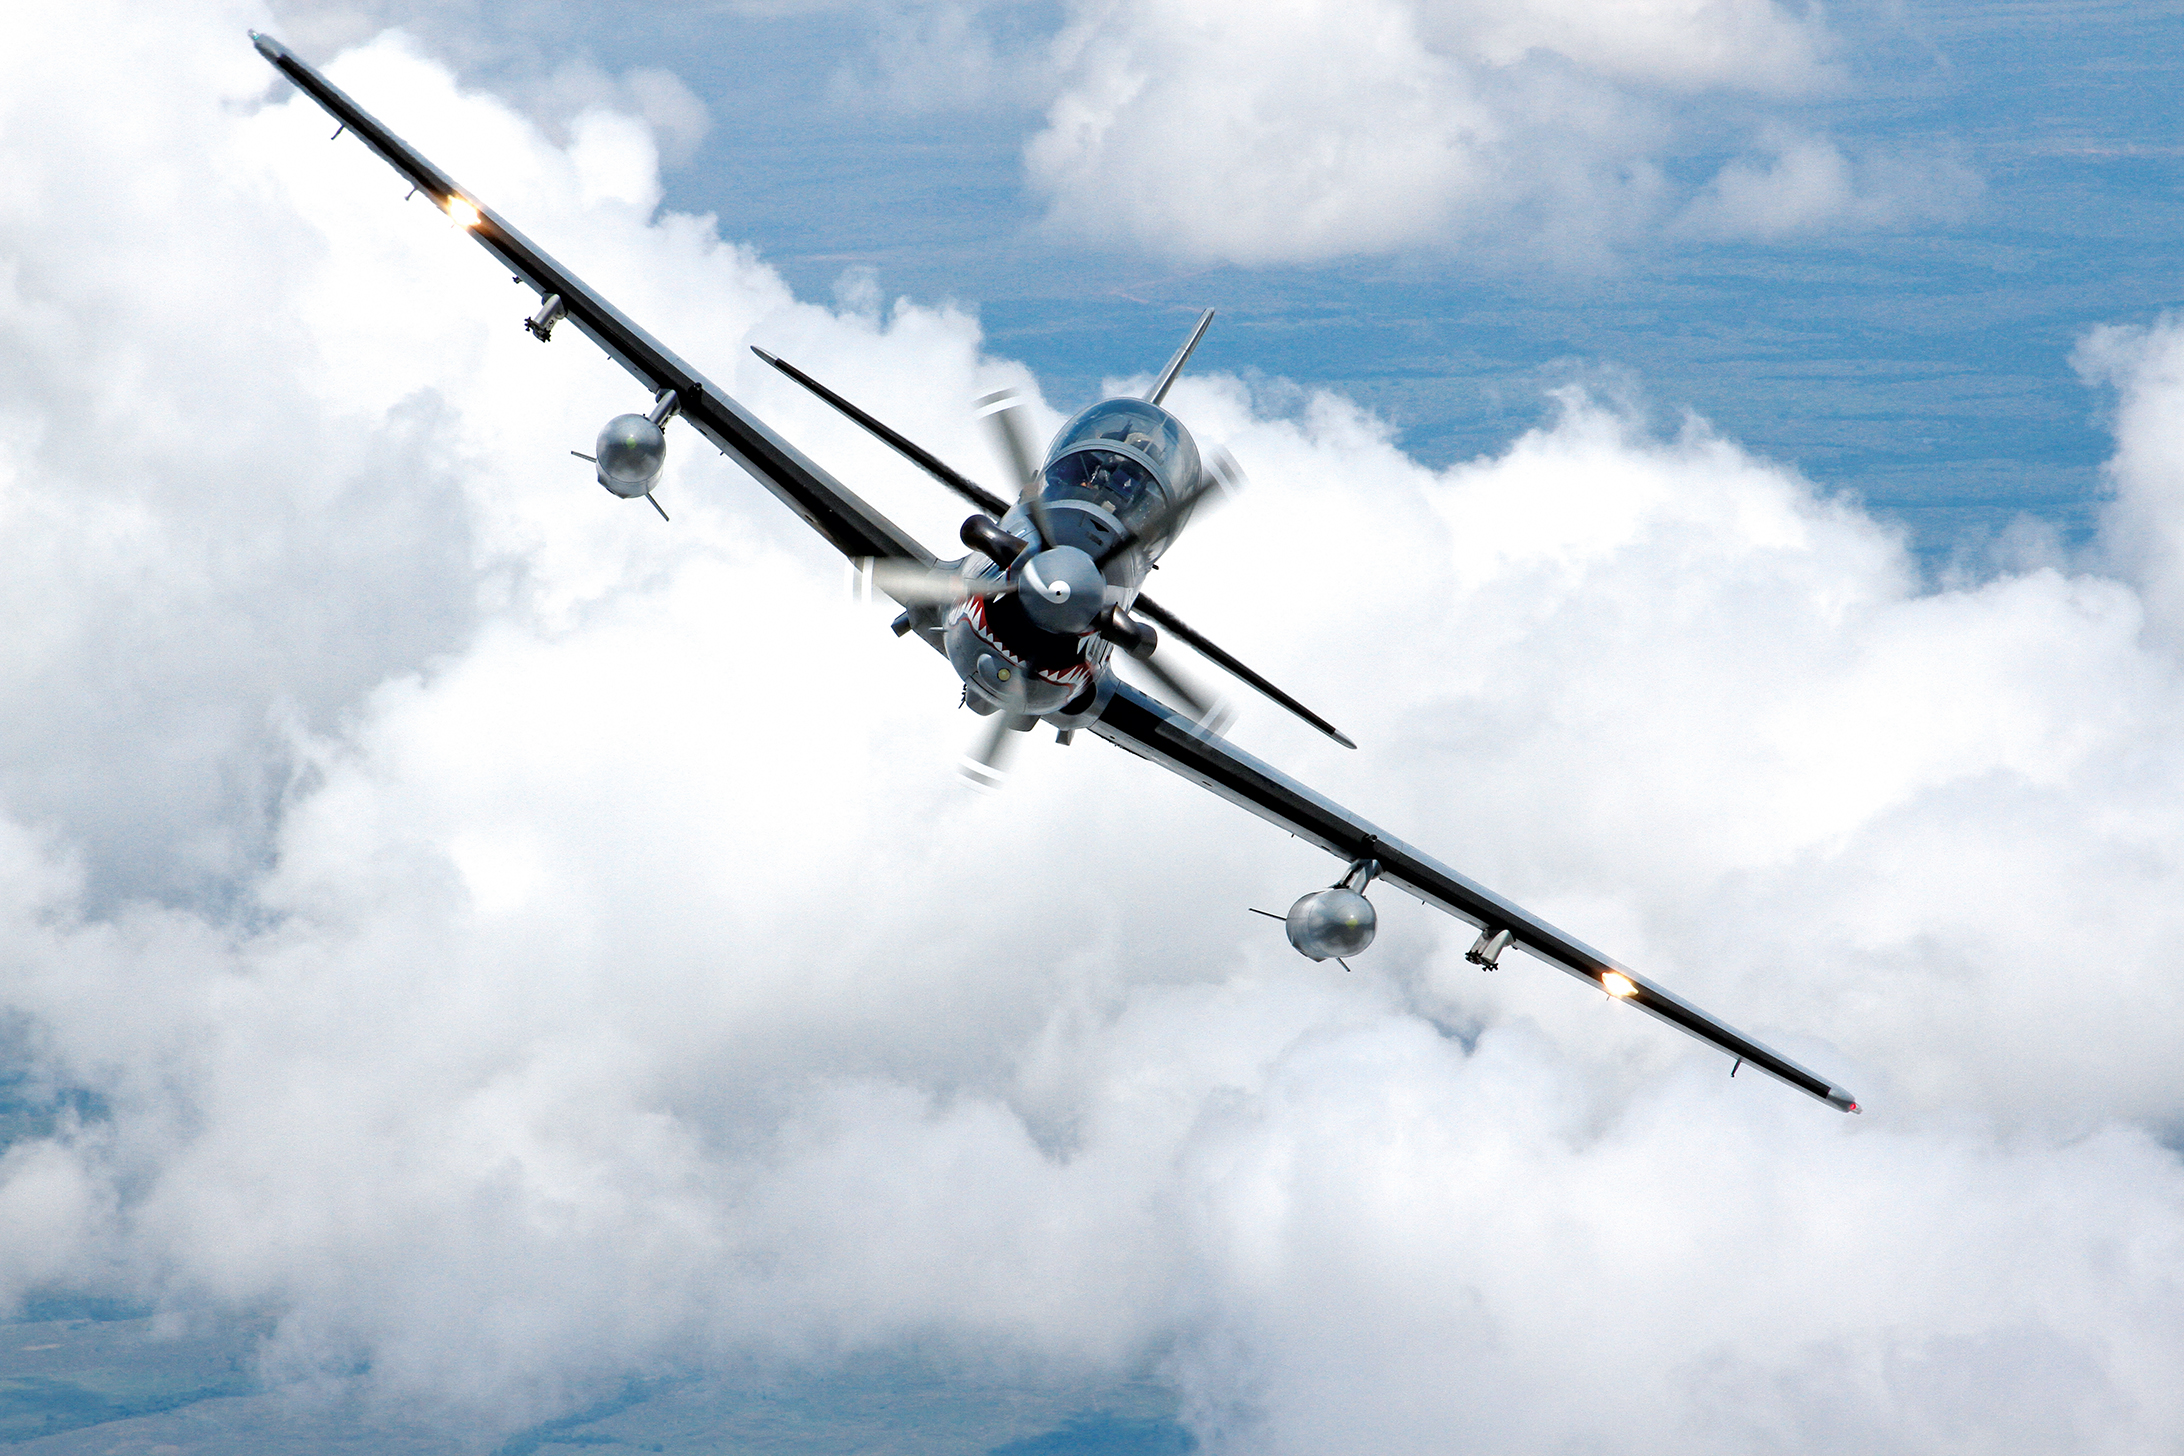 A-29 Super Tucano, aeronave de combate táctico que logró destacados resultados operacionales durante el conflicto armado al desarrollar misiones de interdicción aérea, apoyo aéreo cercano, reconocimiento armado, neutralización de aeronaves, así como búsqueda y rescate.